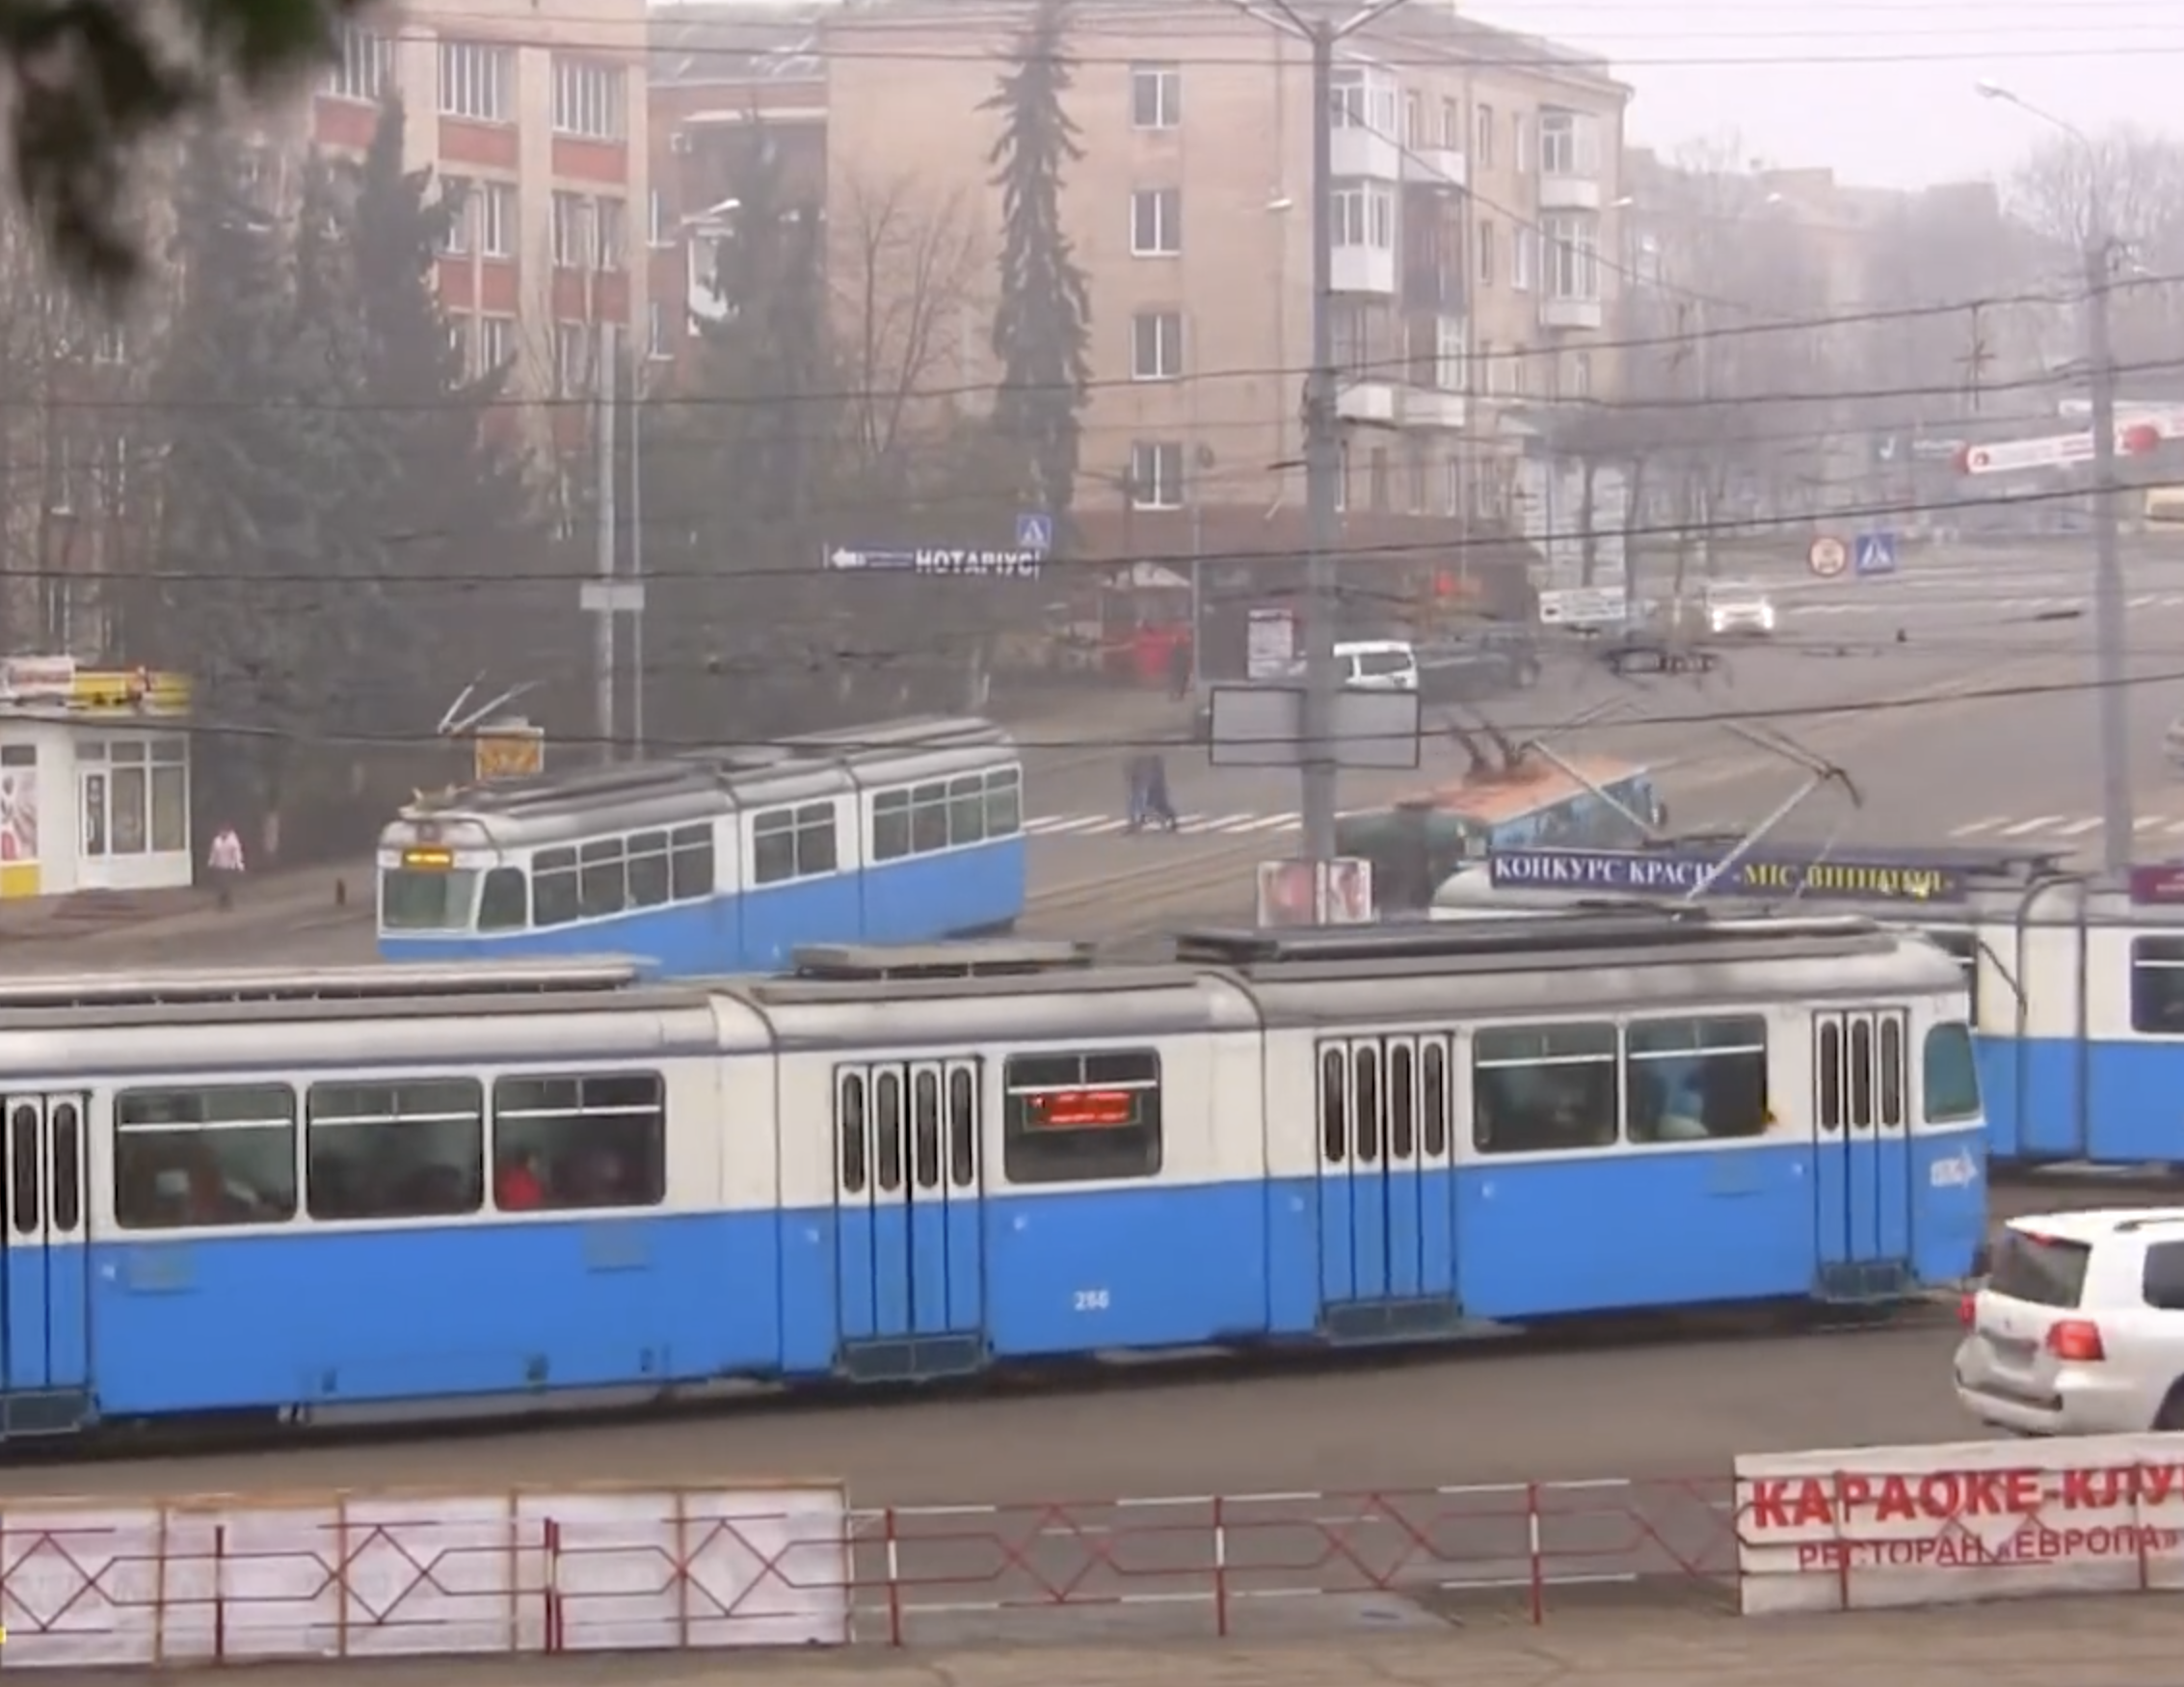 Zürcher Tram in Ukraine